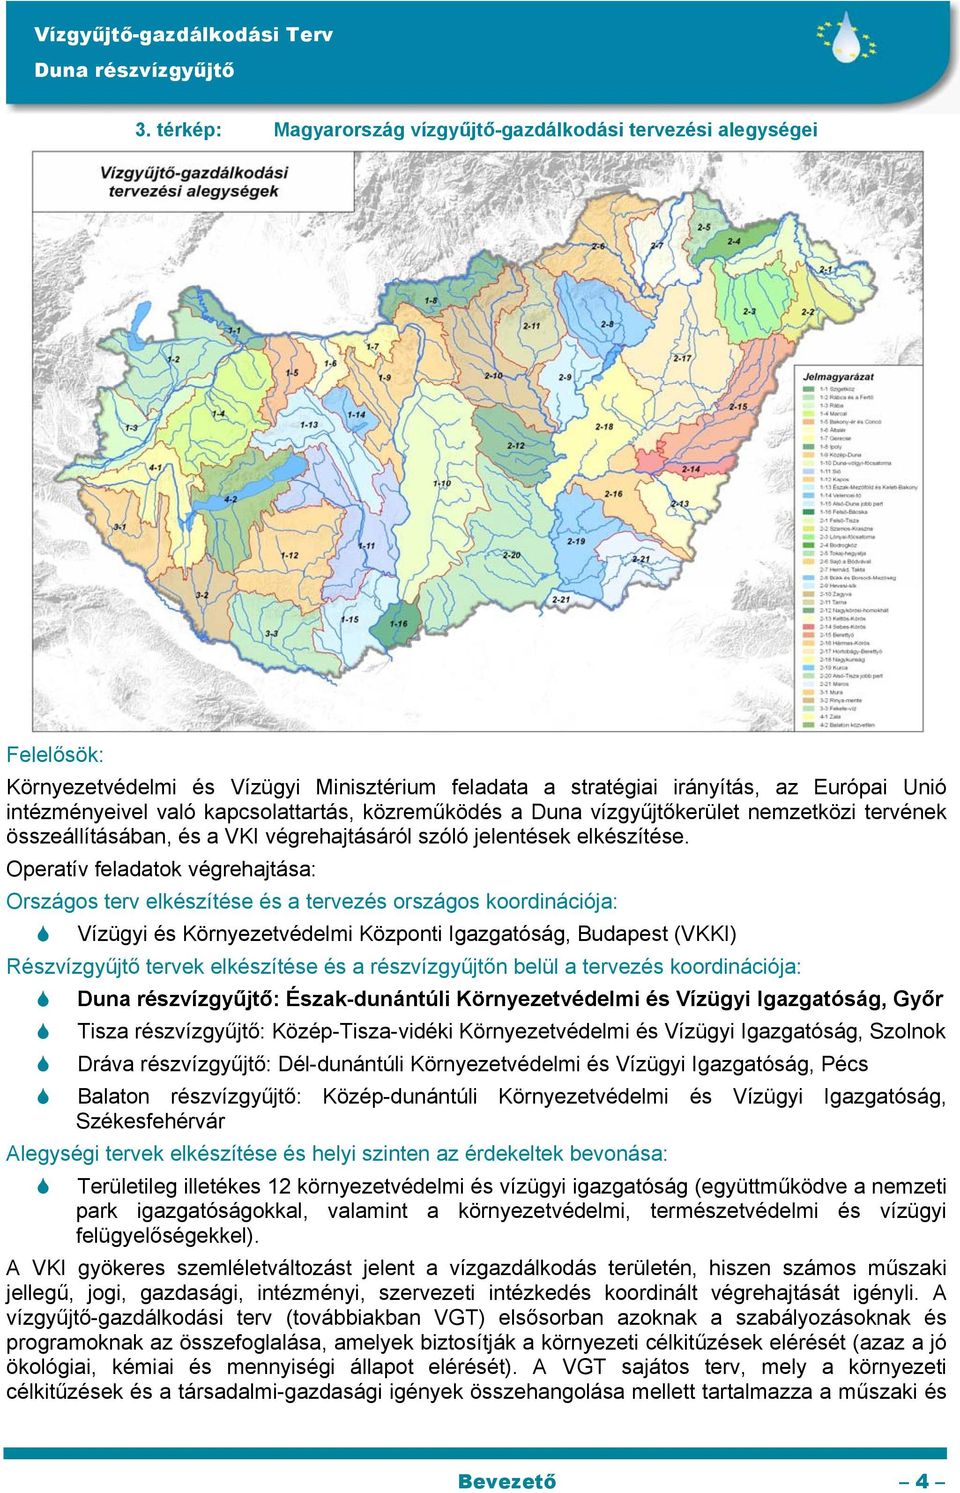 Operatív feladatok végrehajtása: Országos terv elkészítése és a tervezés országos koordinációja: Vízügyi és Környezetvédelmi Központi Igazgatóság, Budapest (VKKI) Részvízgyűjtő tervek elkészítése és